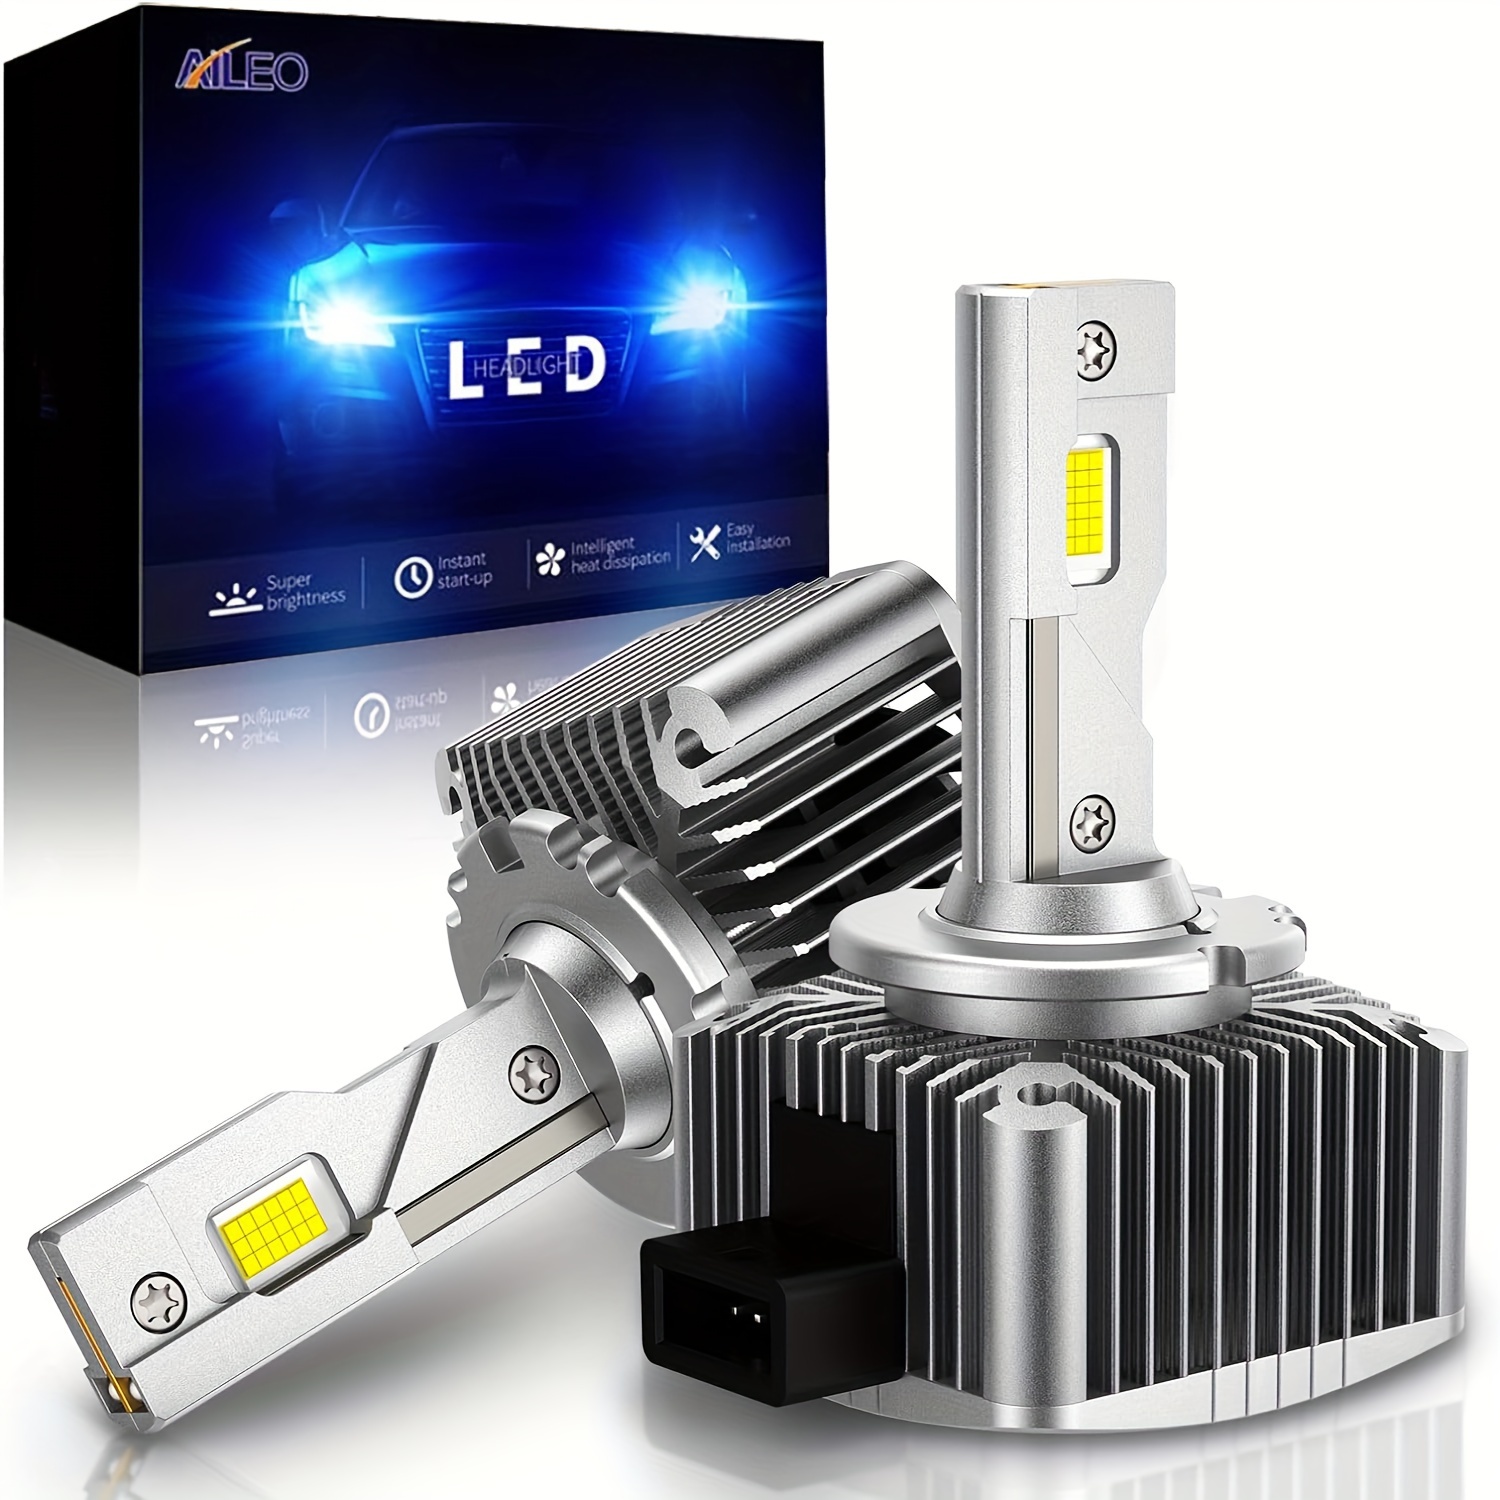 Aileo 2 Pcs D3s Led Car Headlight D2s D4s D5s D1s D1r D2r D3r D4r Hid  Replacement Xenon Bulb Turbo 40000lm High Power 6500k 100w - Car Headlight  Bulbs(led) - AliExpress